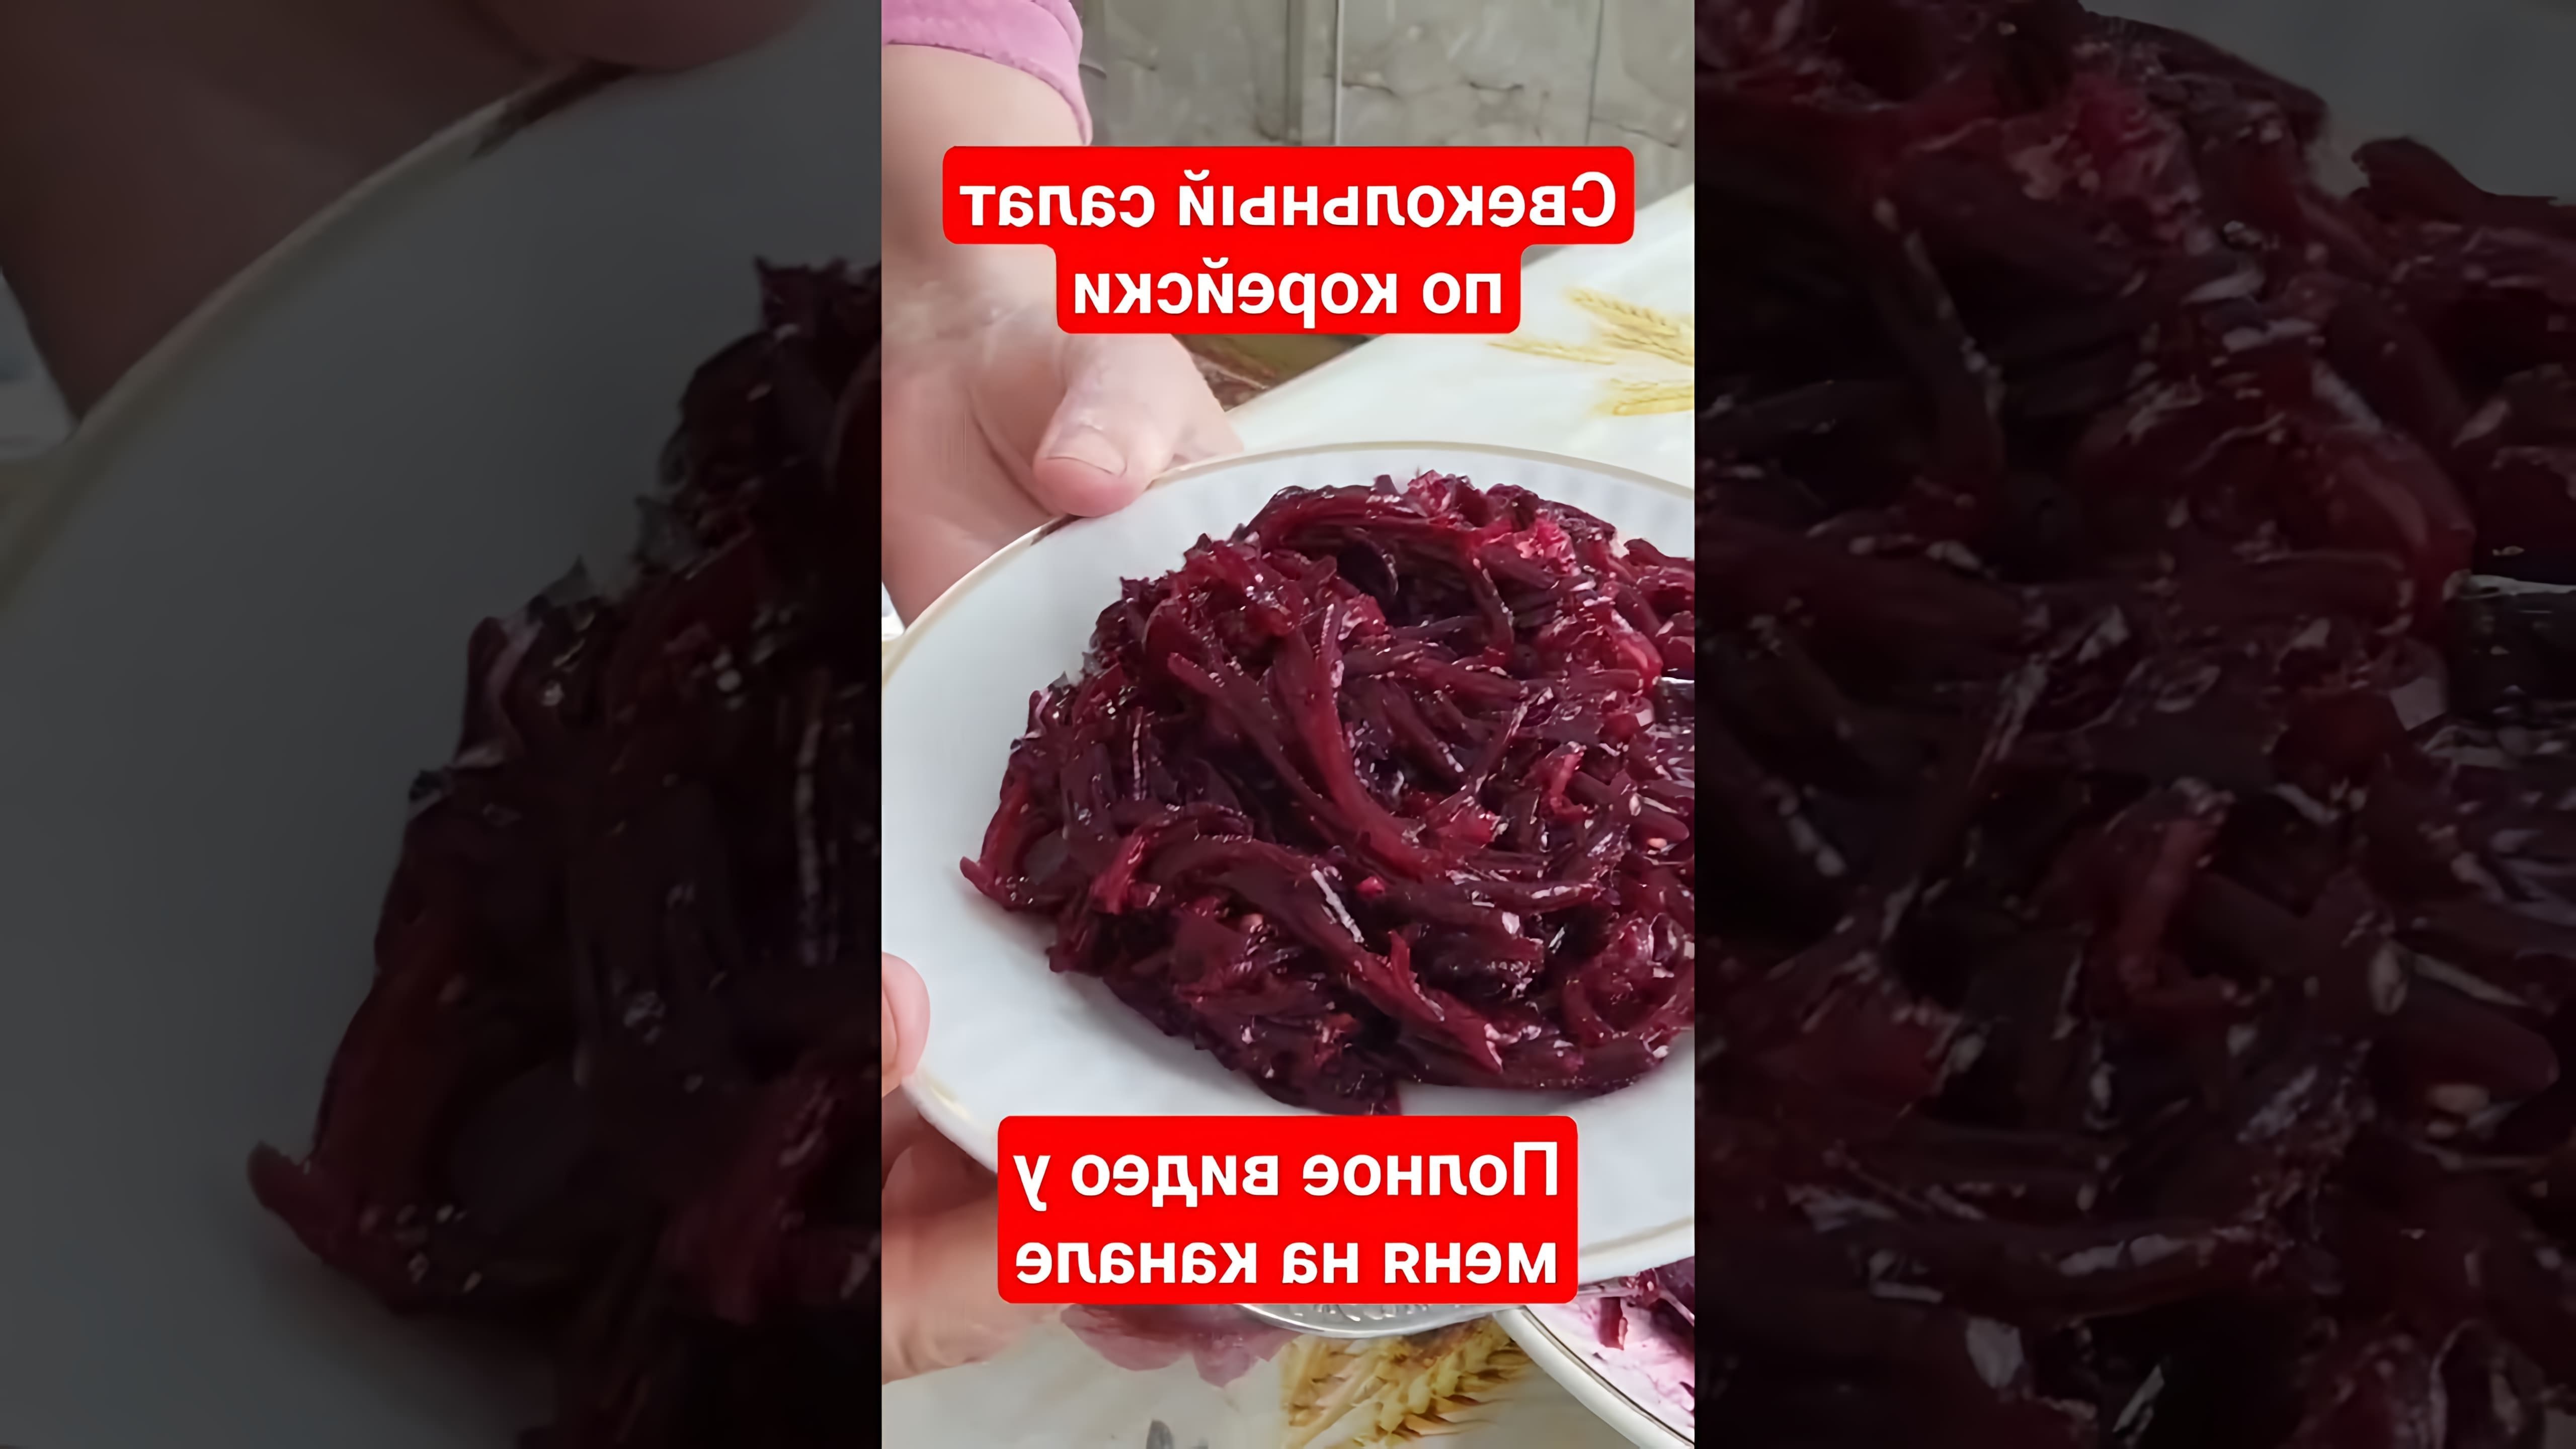 В этом видео-ролике будет представлен рецепт свекольного салата по-корейски, который можно приготовить быстро и легко